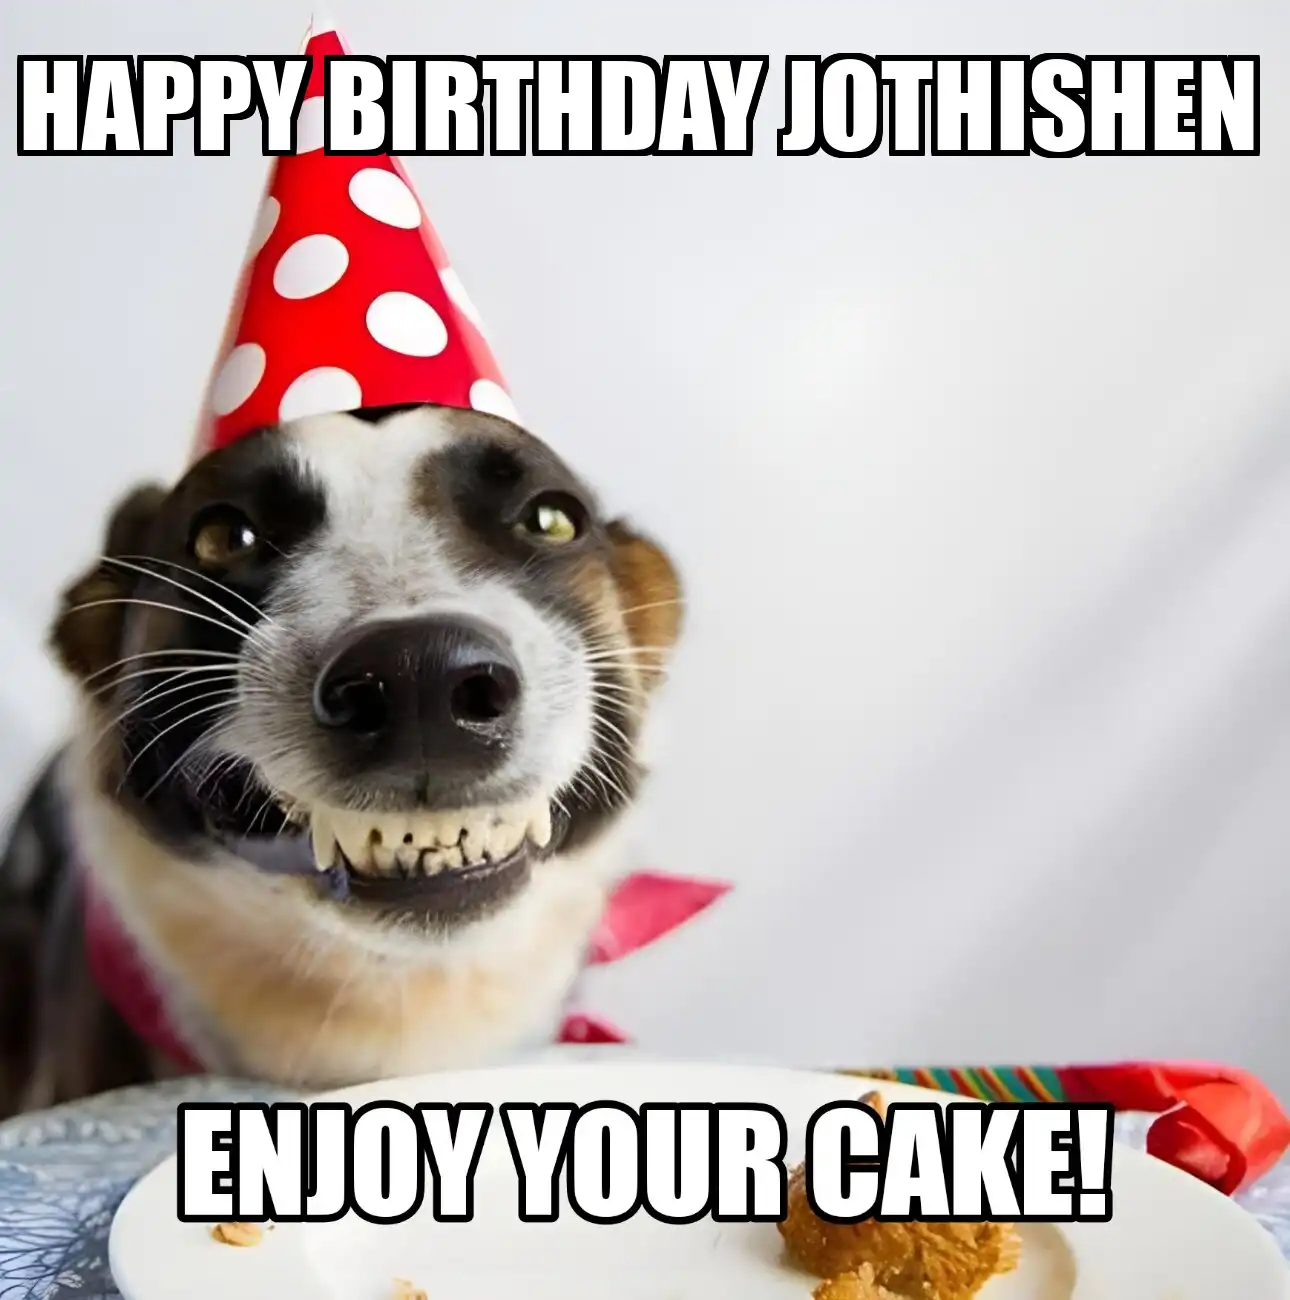 Happy Birthday Jothishen Enjoy Your Cake Dog Meme